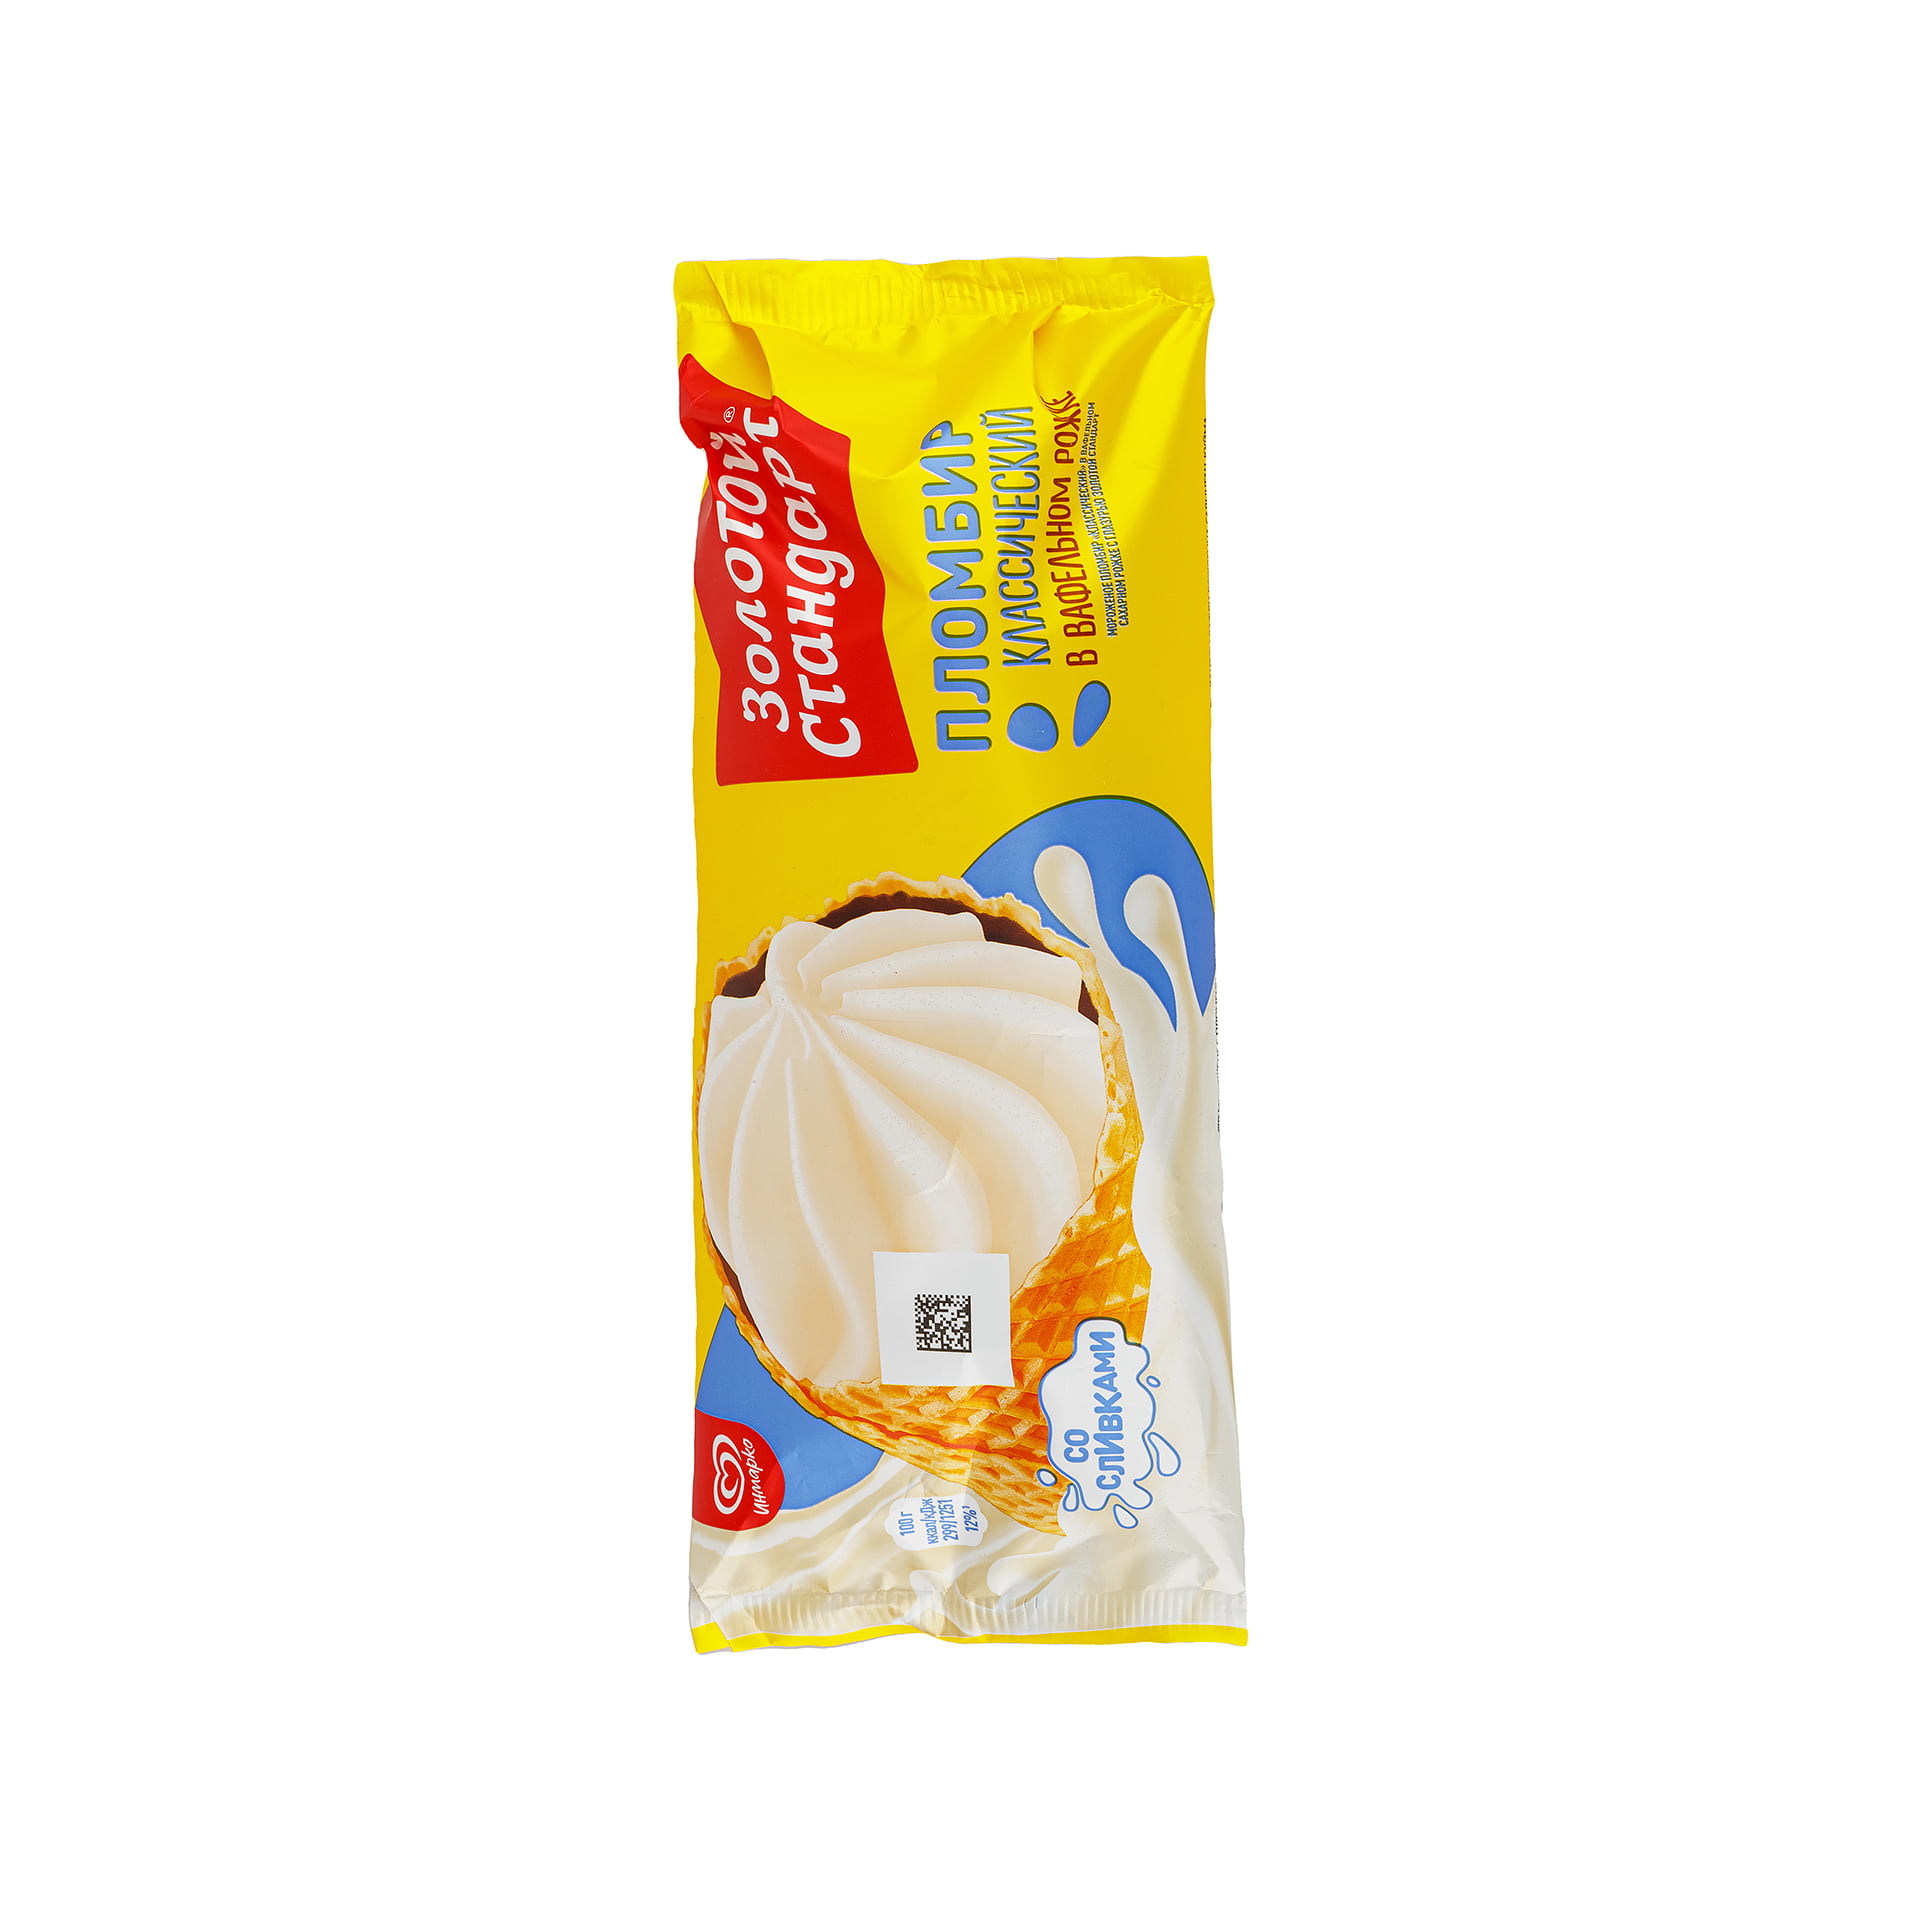 Мороженое пломбир в вафельном рожке с глазурью Золотой стандарт Инмарко 100 г 871LED, общий вид, купить оптом с доставкой по москве и московской области, недорого, низкая цена